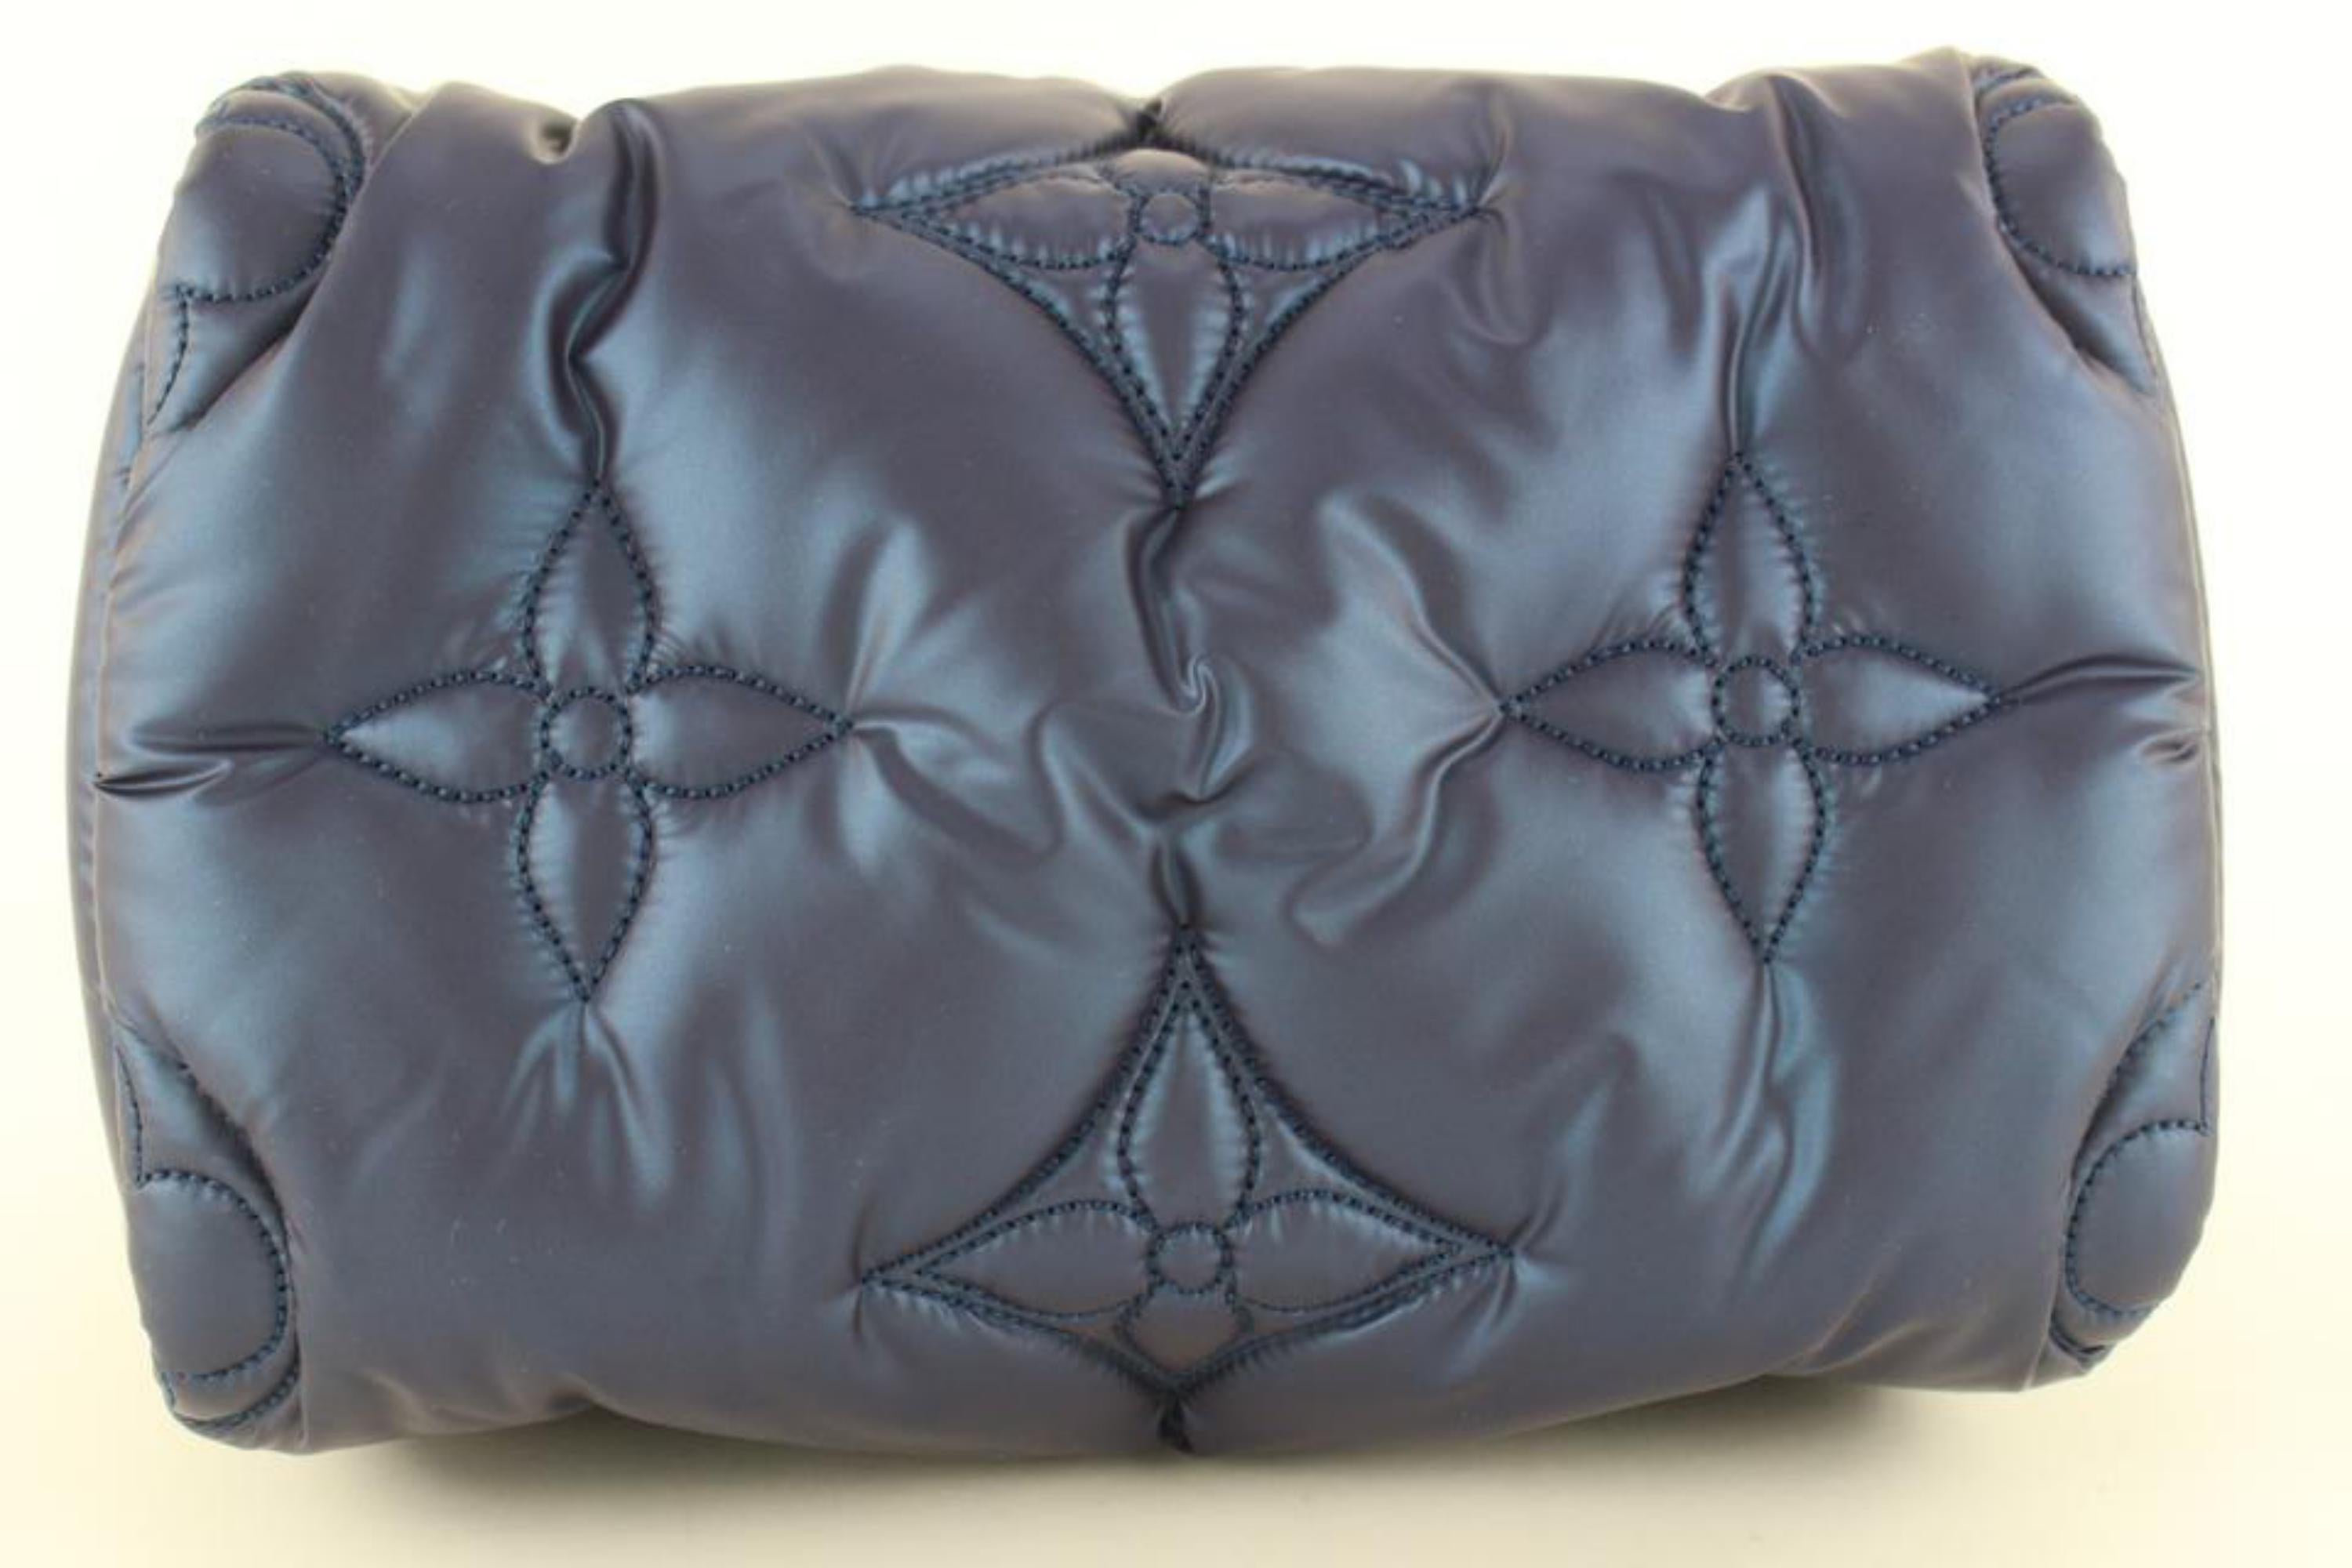 Louis Vuitton Pillow Speedy - For Sale on 1stDibs  loui beton tasche,  handtasche louis beton, louis beton handtasche